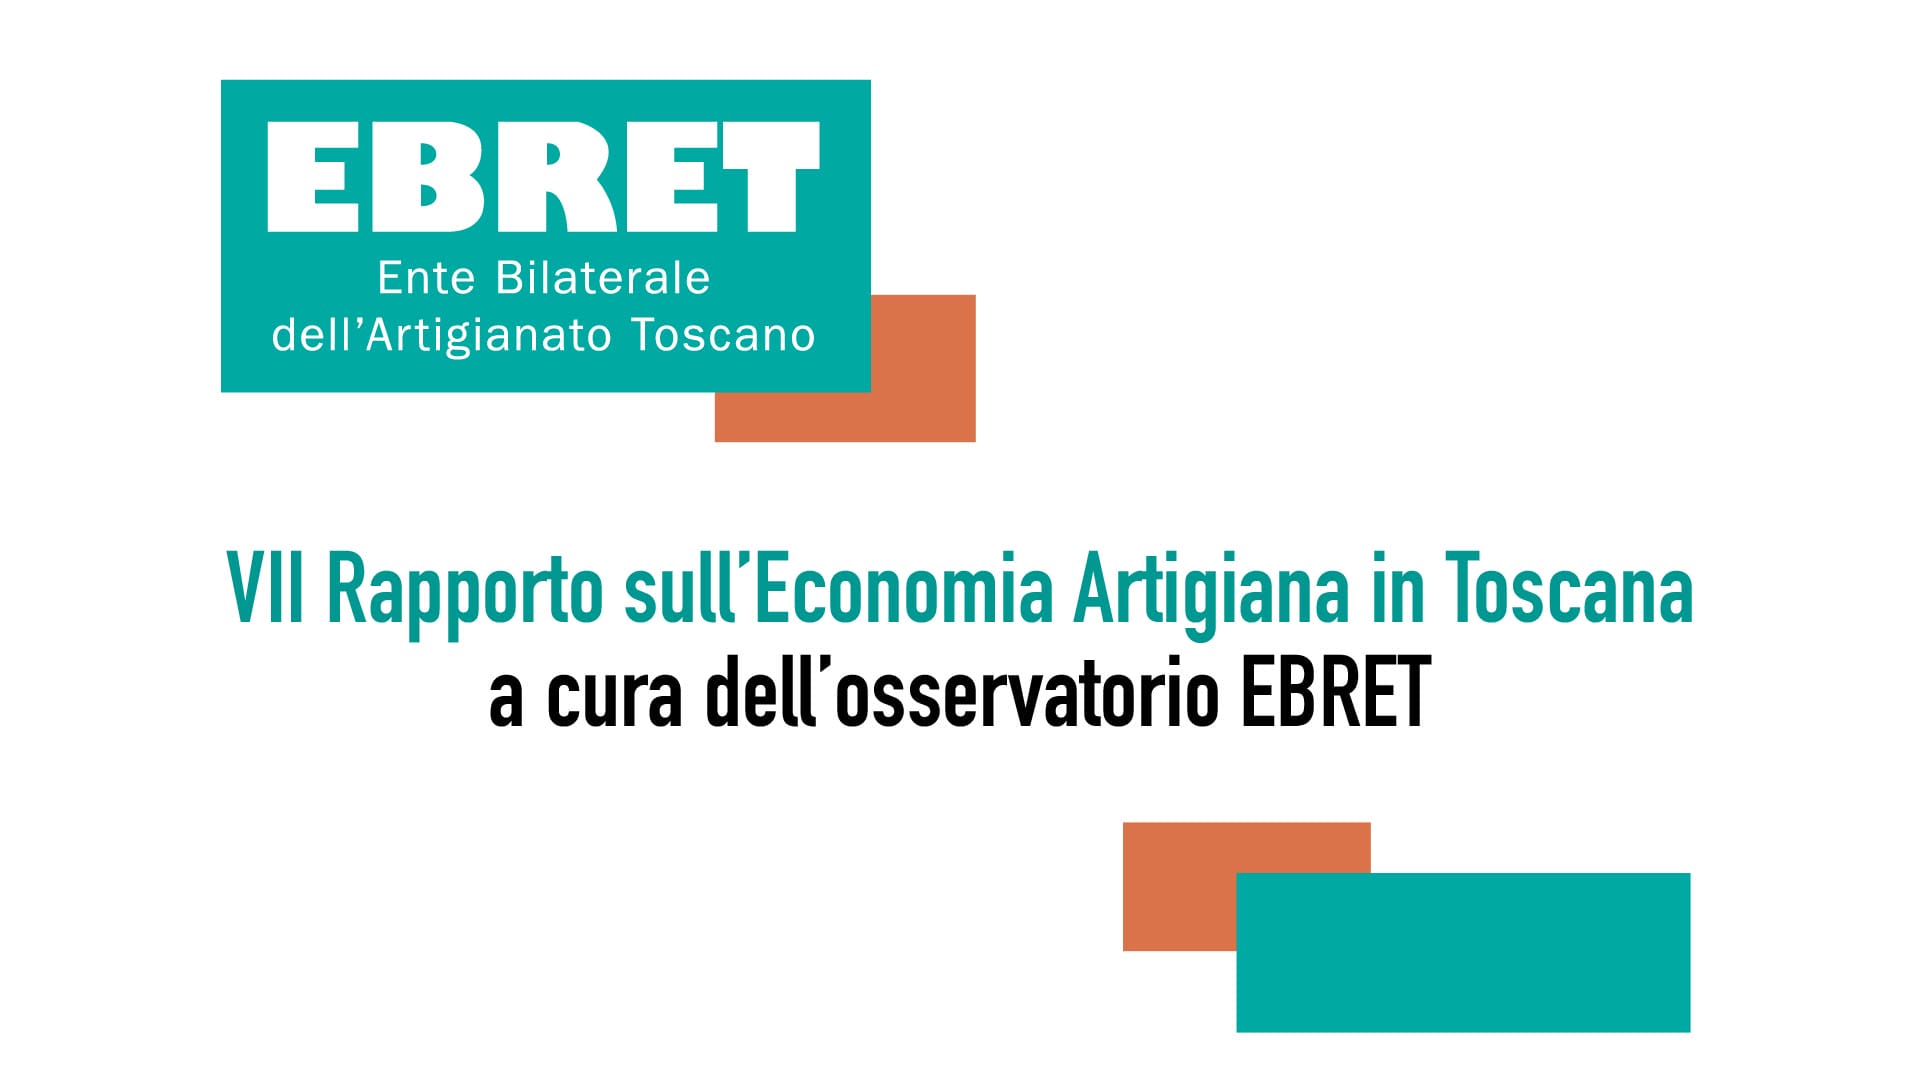 VII Rapporto sull’Economia Artigiana in Toscana a cura dell’Osservatorio EBRET